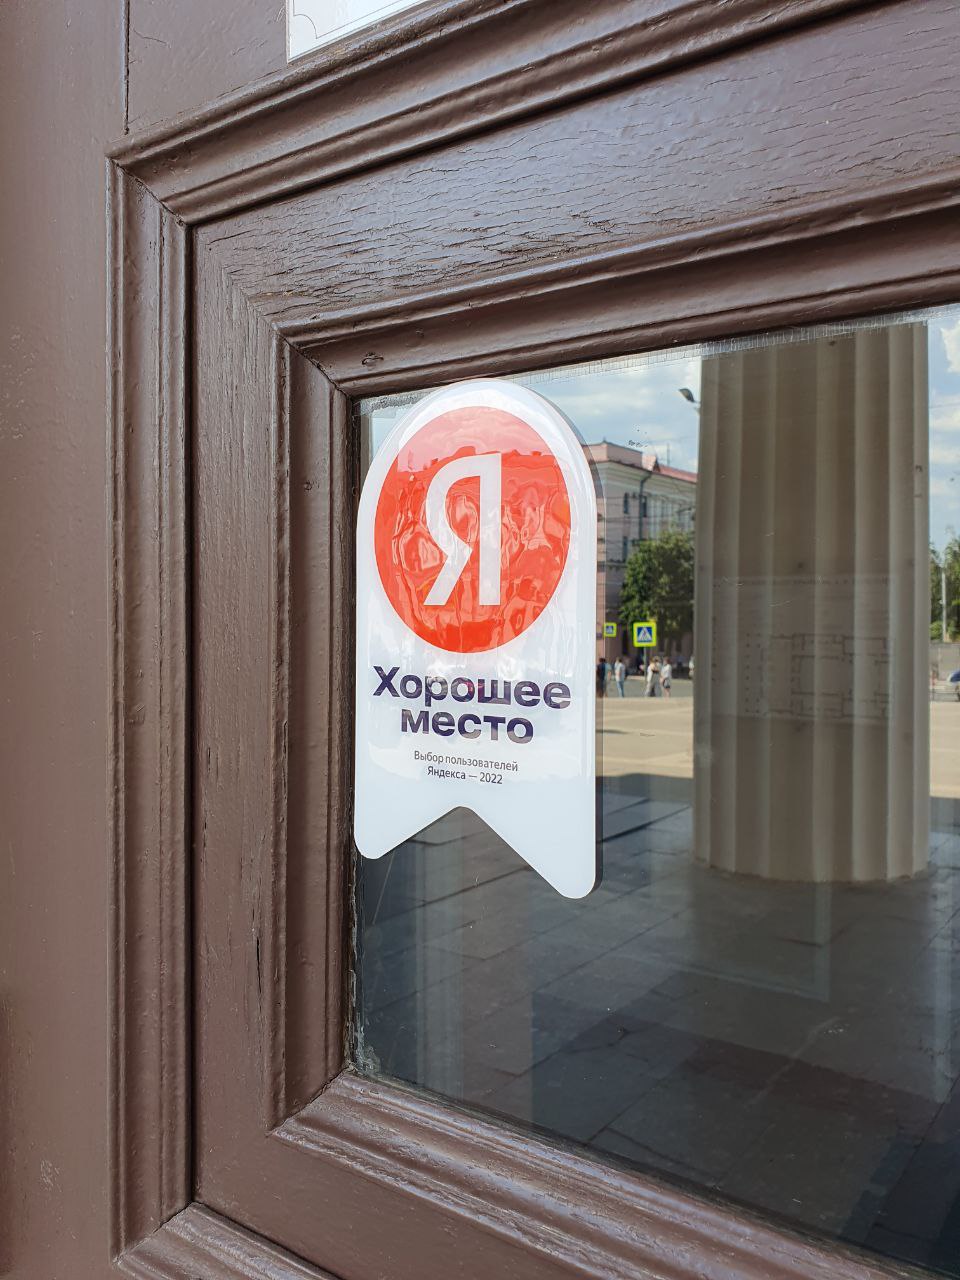 Брянский театр драмы удостоился от Яндекса звания «Хорошее место»